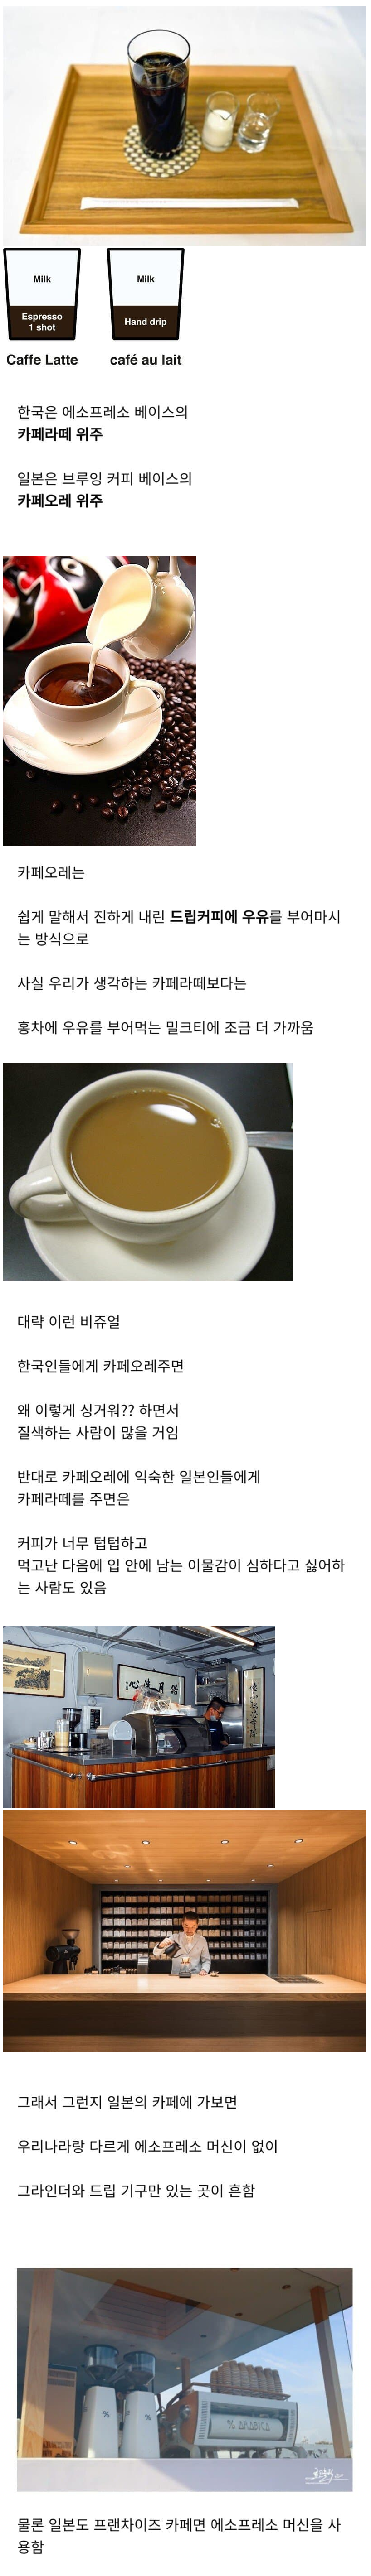 한국과 일본, 커피의 차이